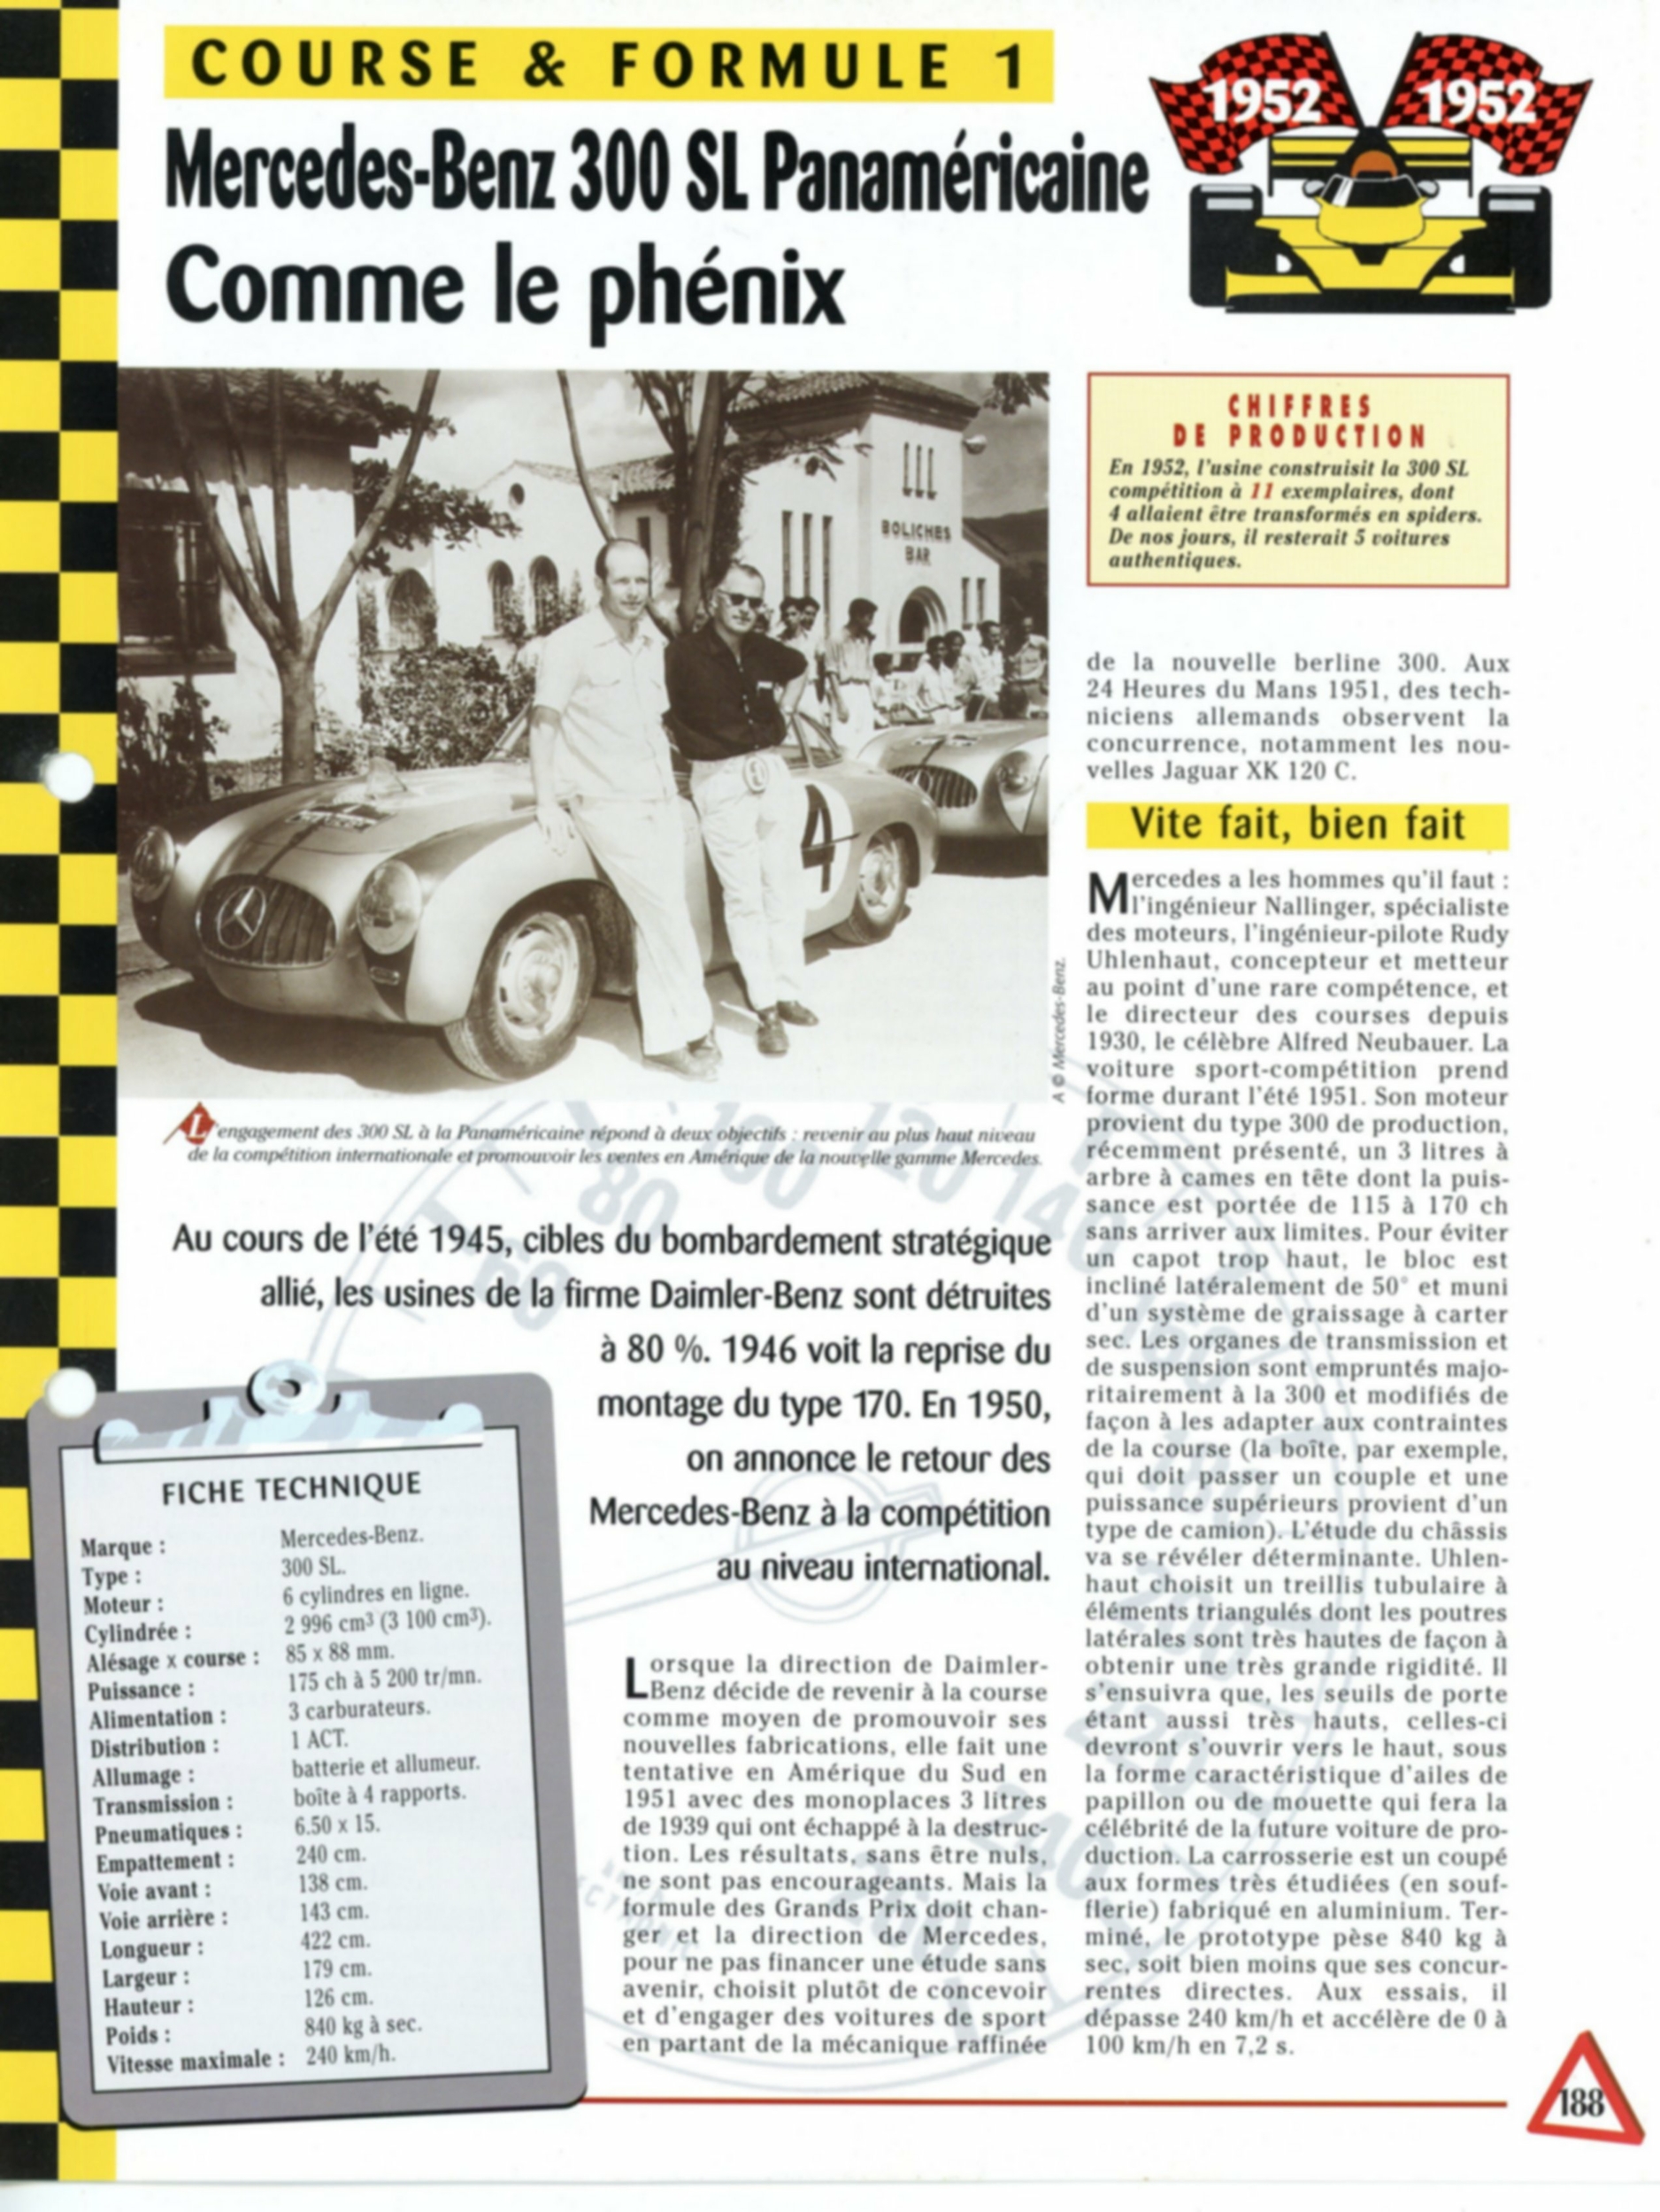 MERCEDES-BENZ 300SL - FICHE TECHNIQUE MERCEDES 300 SL COMME LE PHENIX - 1952